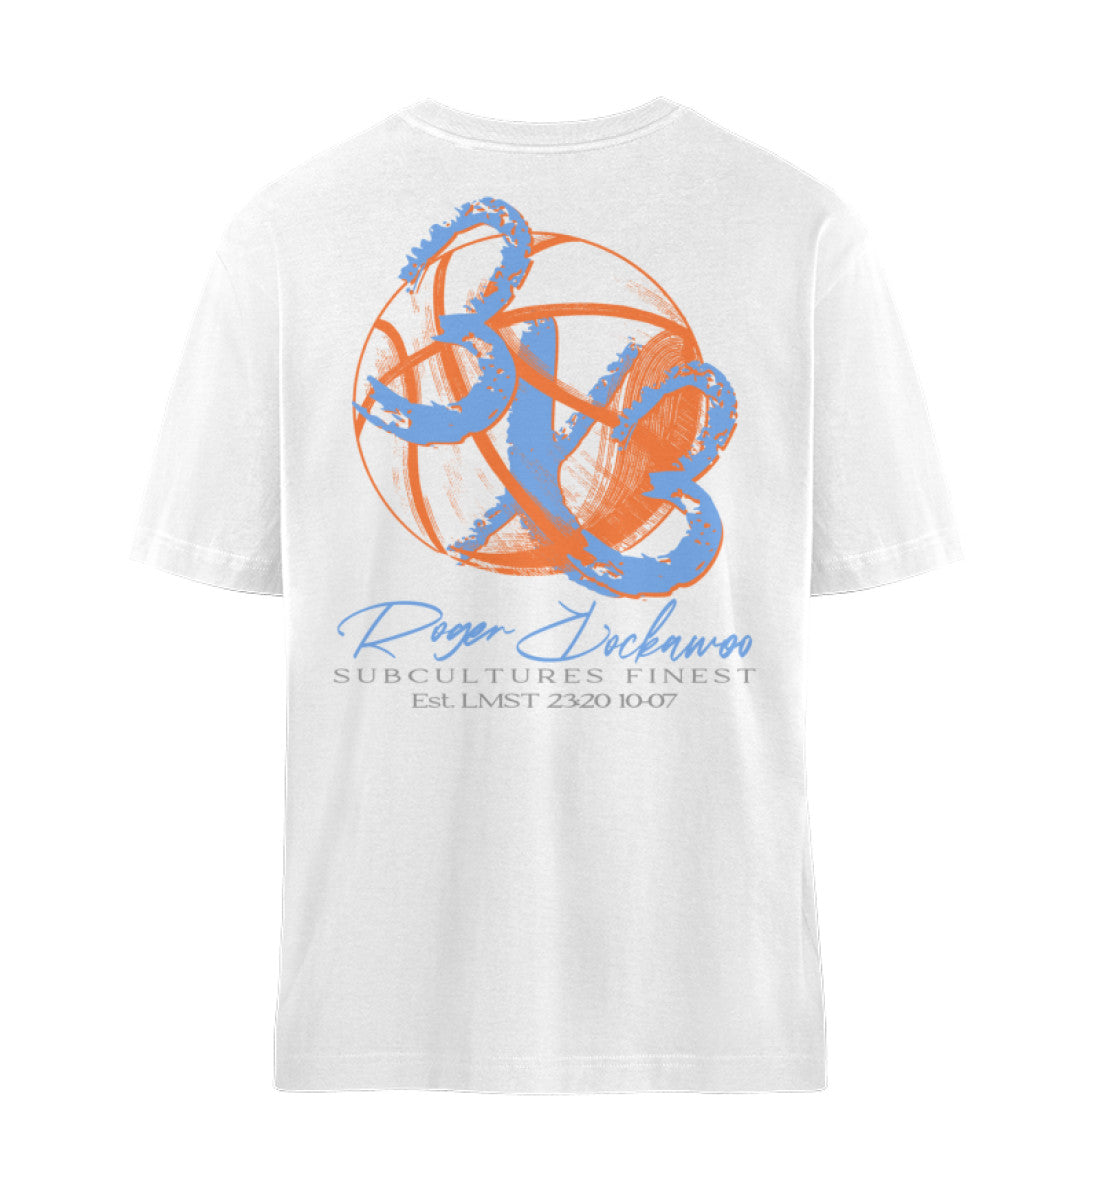 Weißes Navy Blue T-Shirt Unisex Relaxed Fit für Frauen und Männer bedruckt mit dem Design der Roger Rockawoo Kollektion Basketball 3X3 Check Ball